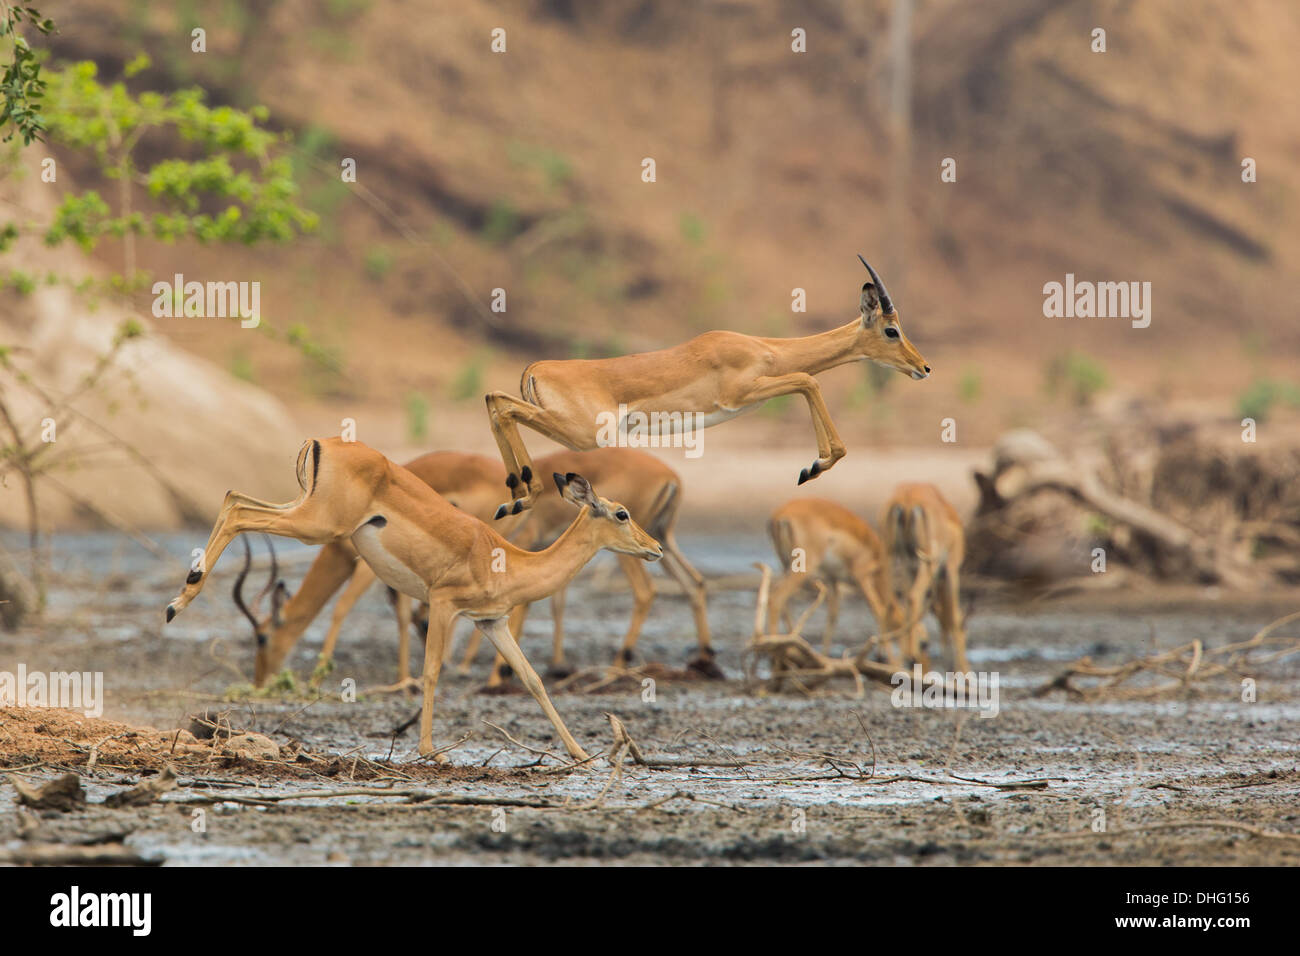 Mâle sub-adulte Impala (Aepyceros melampus) sauter à travers la boue Banque D'Images